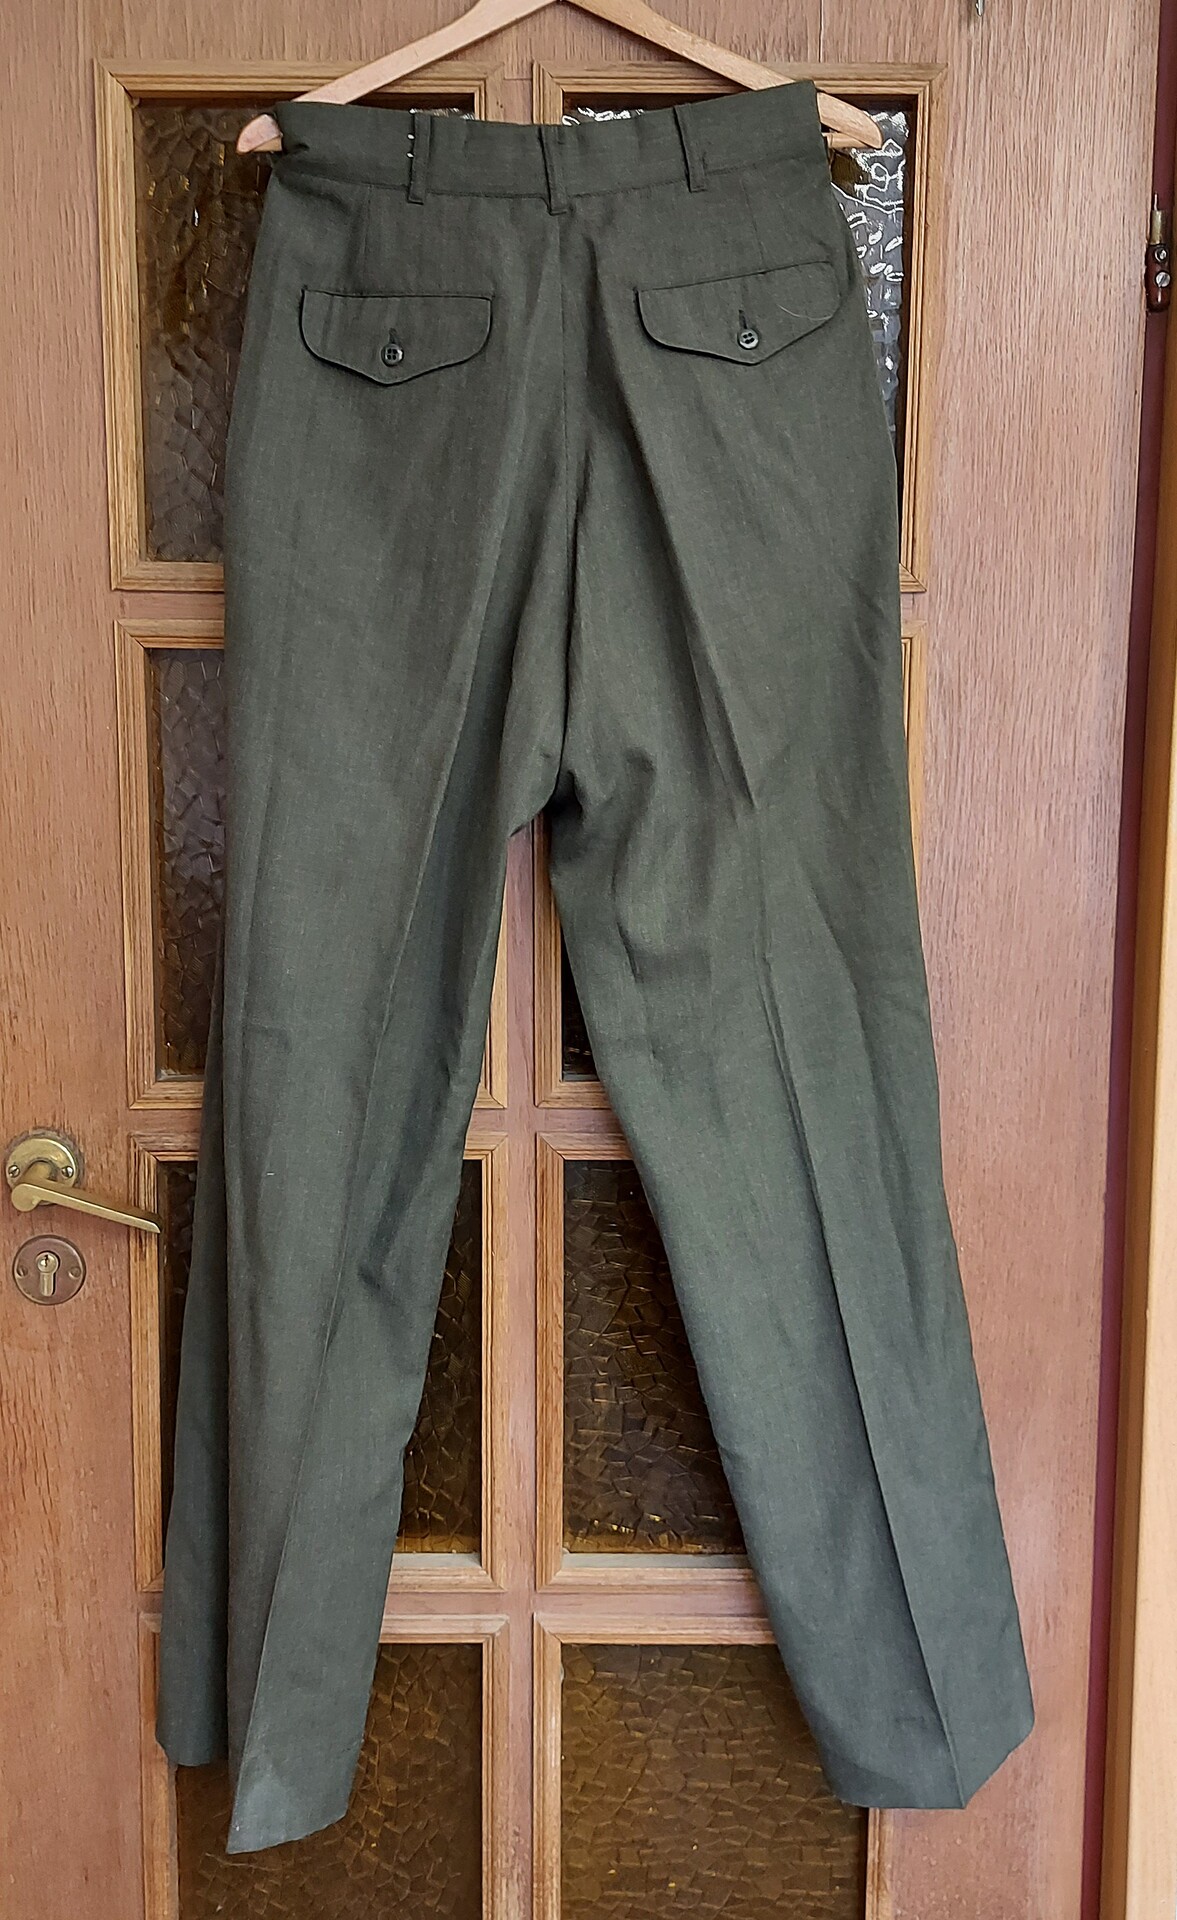 Spodnie Munduru wyjsciowego USMC - Zielone - 31R